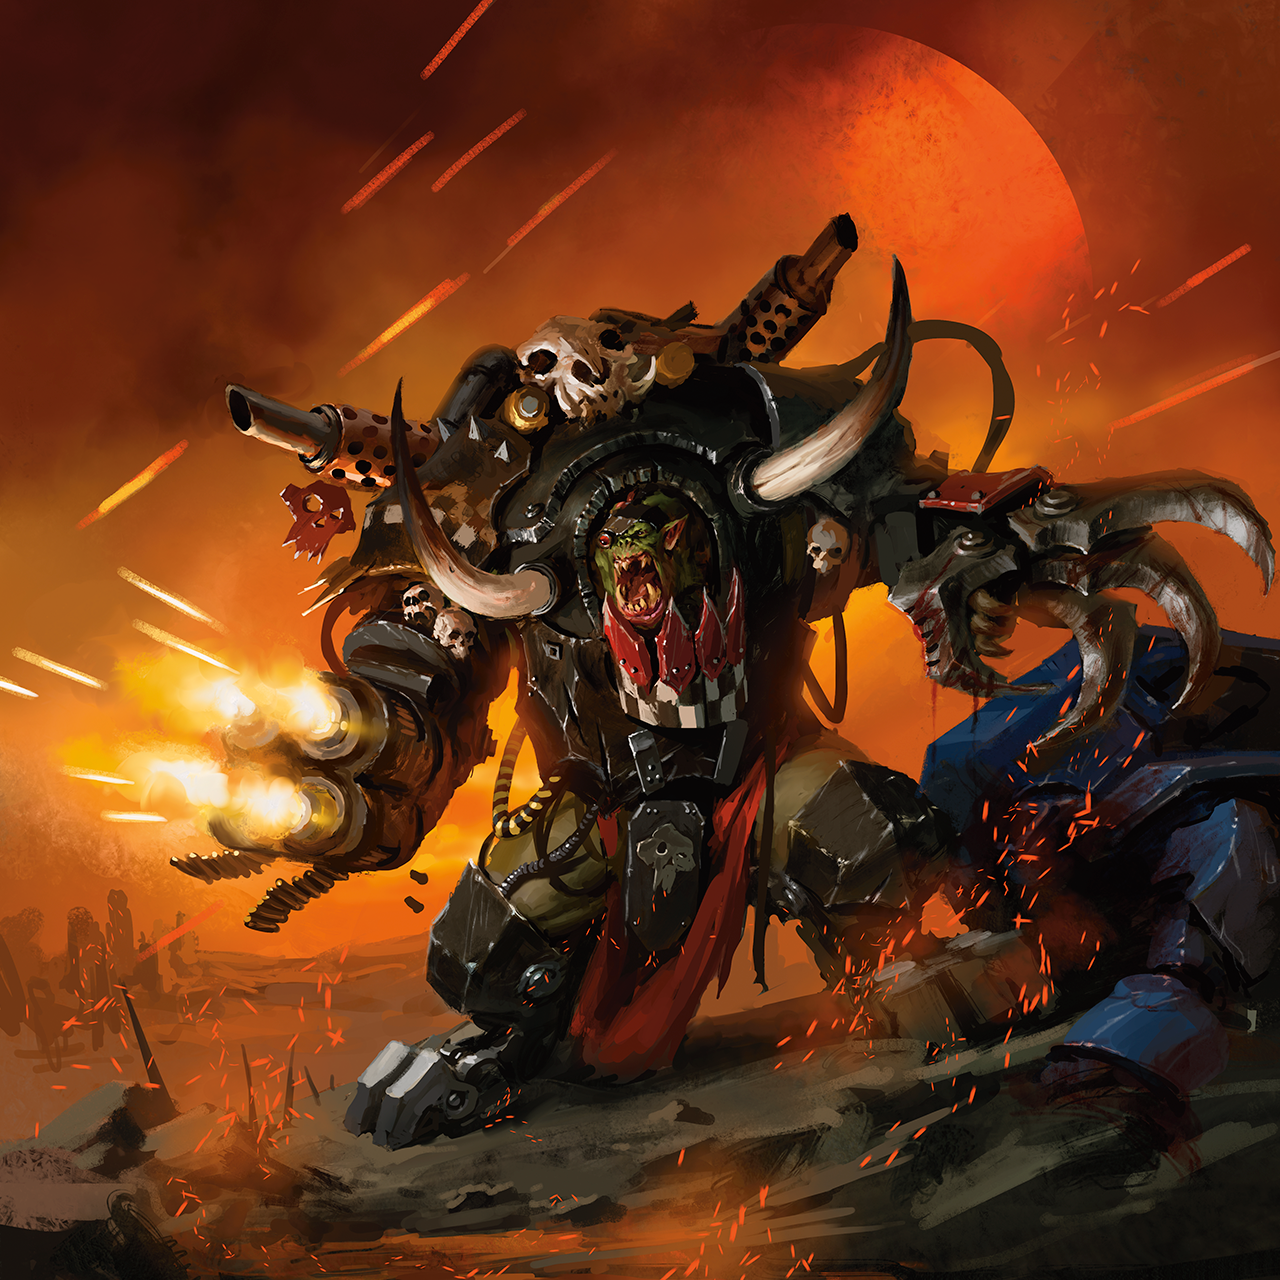 Respect Orks (Warhammer 40,000) : r/respectthreads